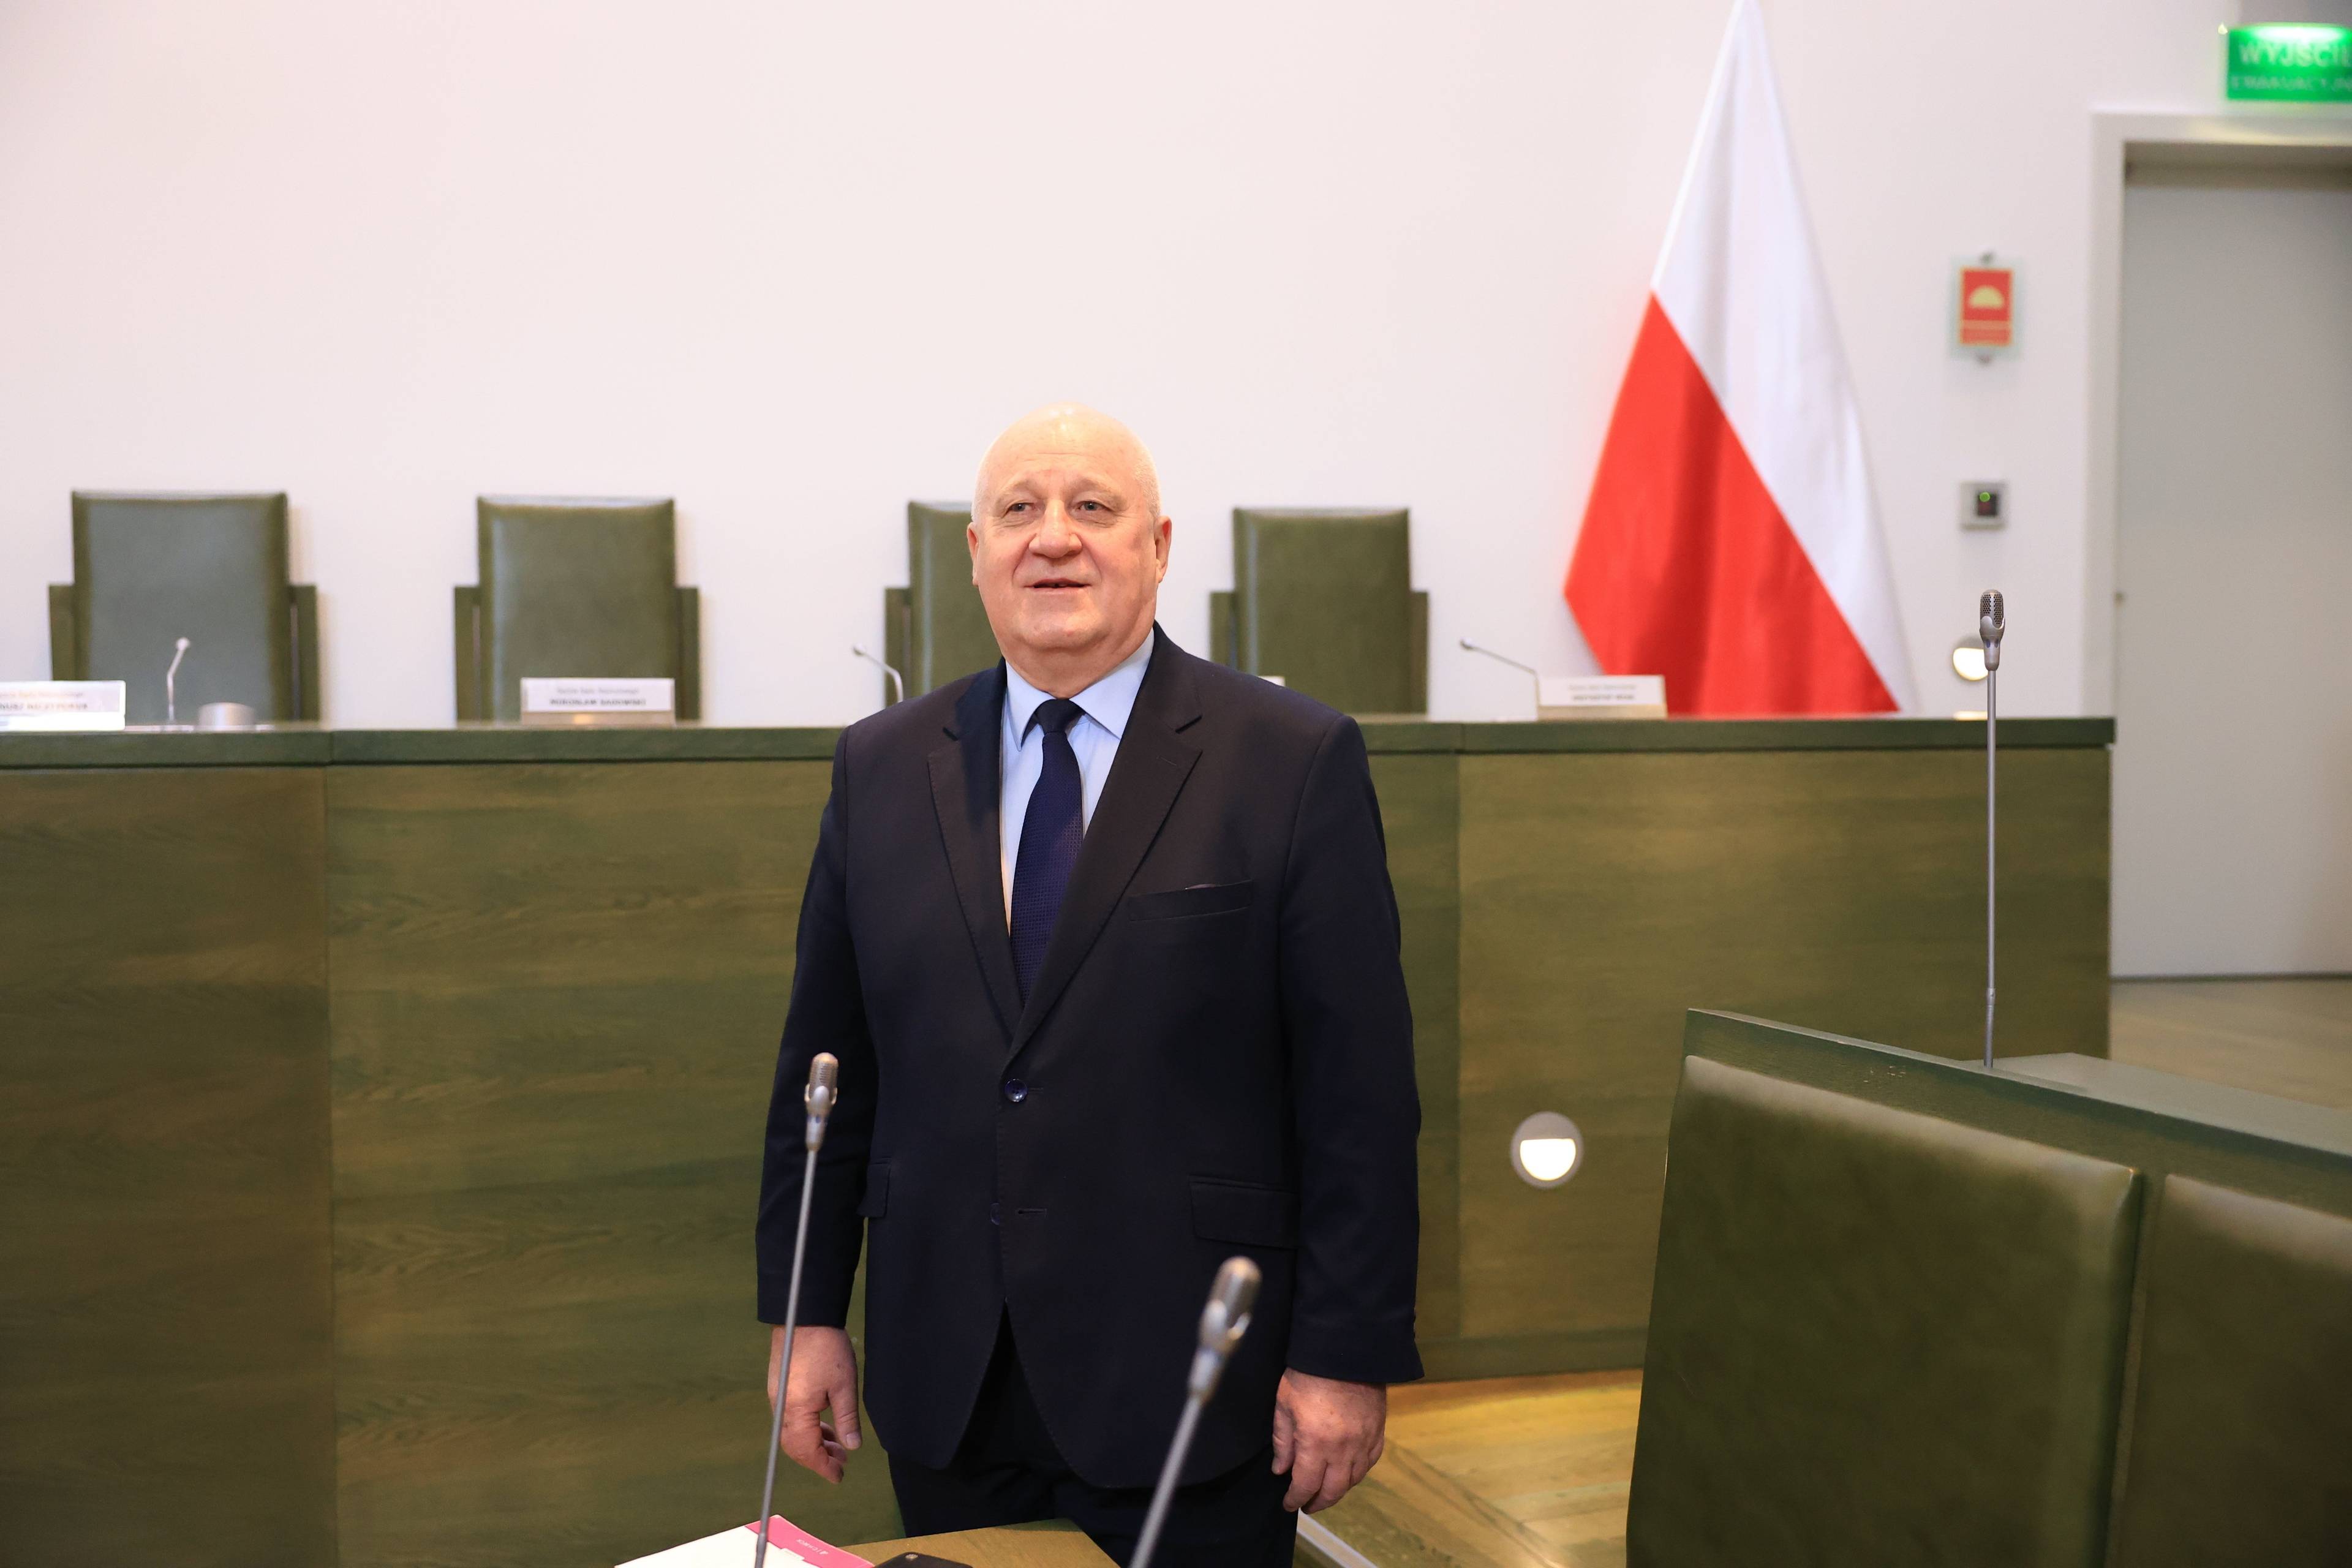 Mężczyzna w garniturze stoi na sali sądowej, za nim stół prezydialny i flaga Polski